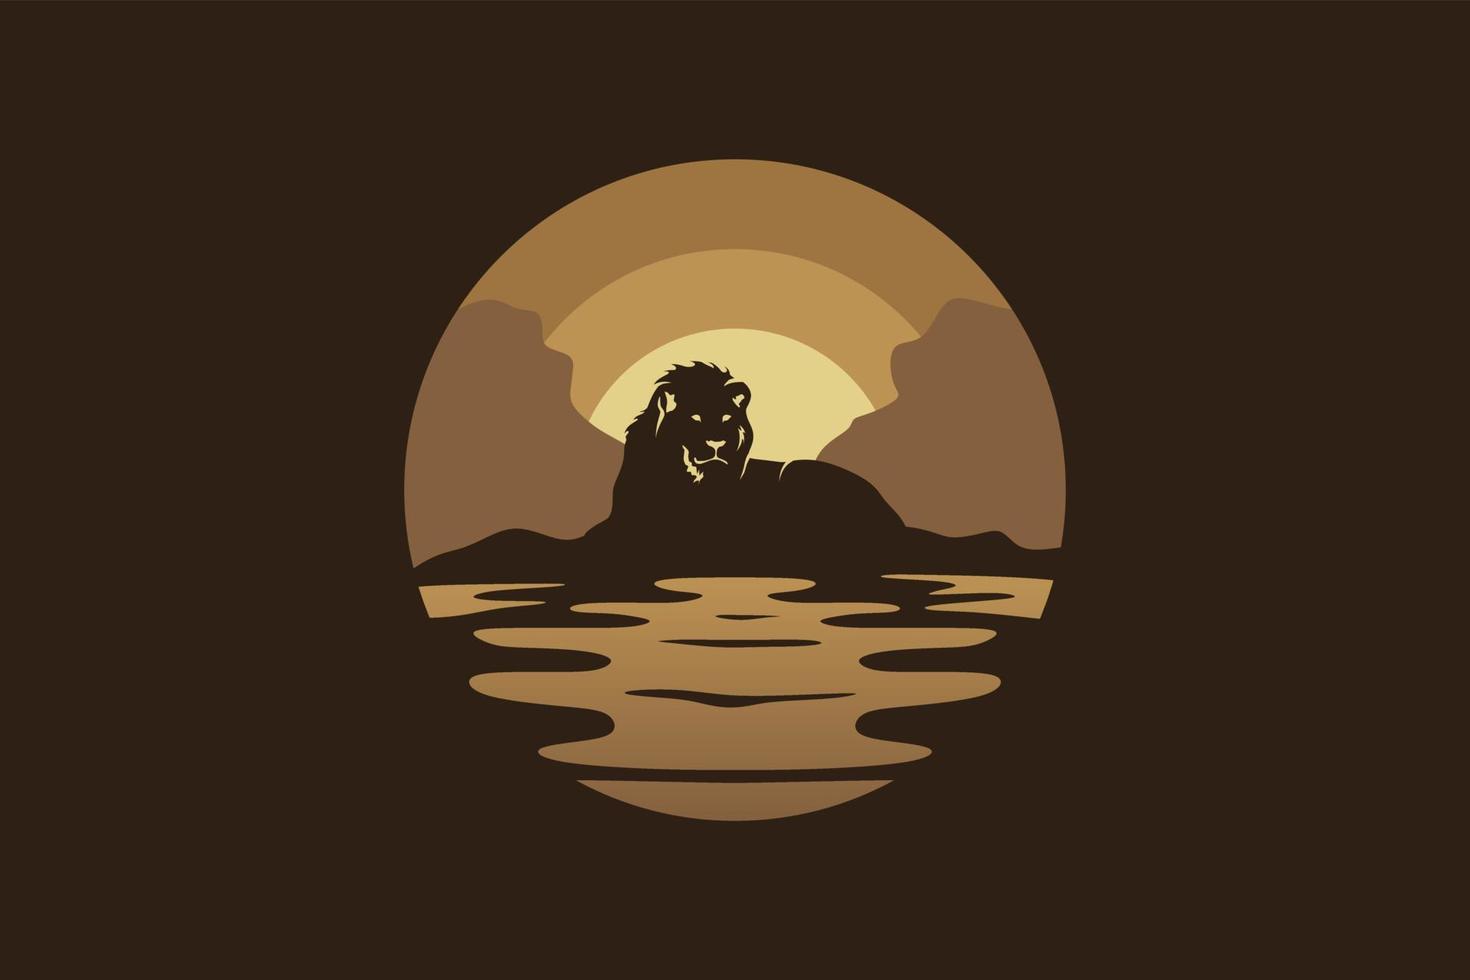 diseño de paisaje nocturno con logotipo de león. la silueta de un león se mezcla con una ilustración de vector de paisaje nocturno.